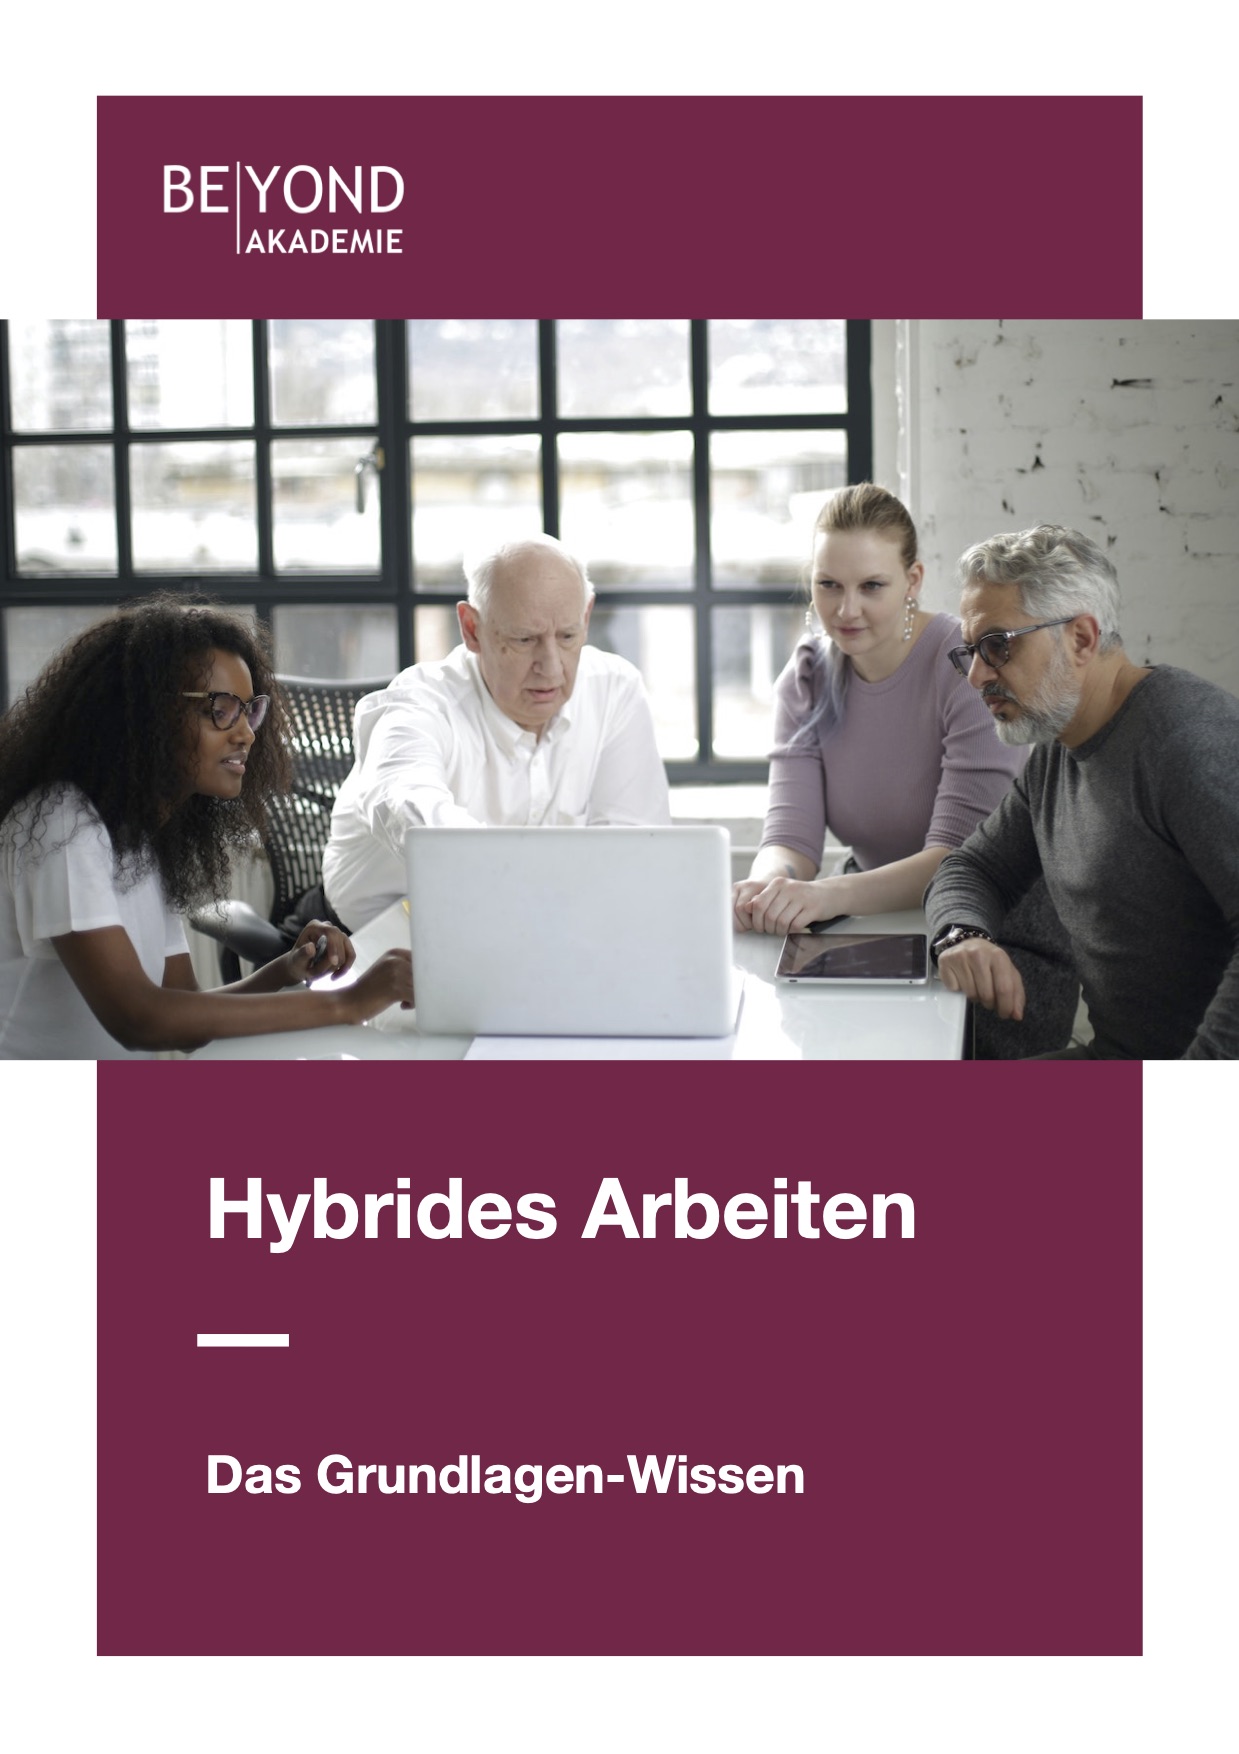 BEYOND-Akademie-Hybrides-Arbeiten-Das-Grundlagen-Wissen.jpg